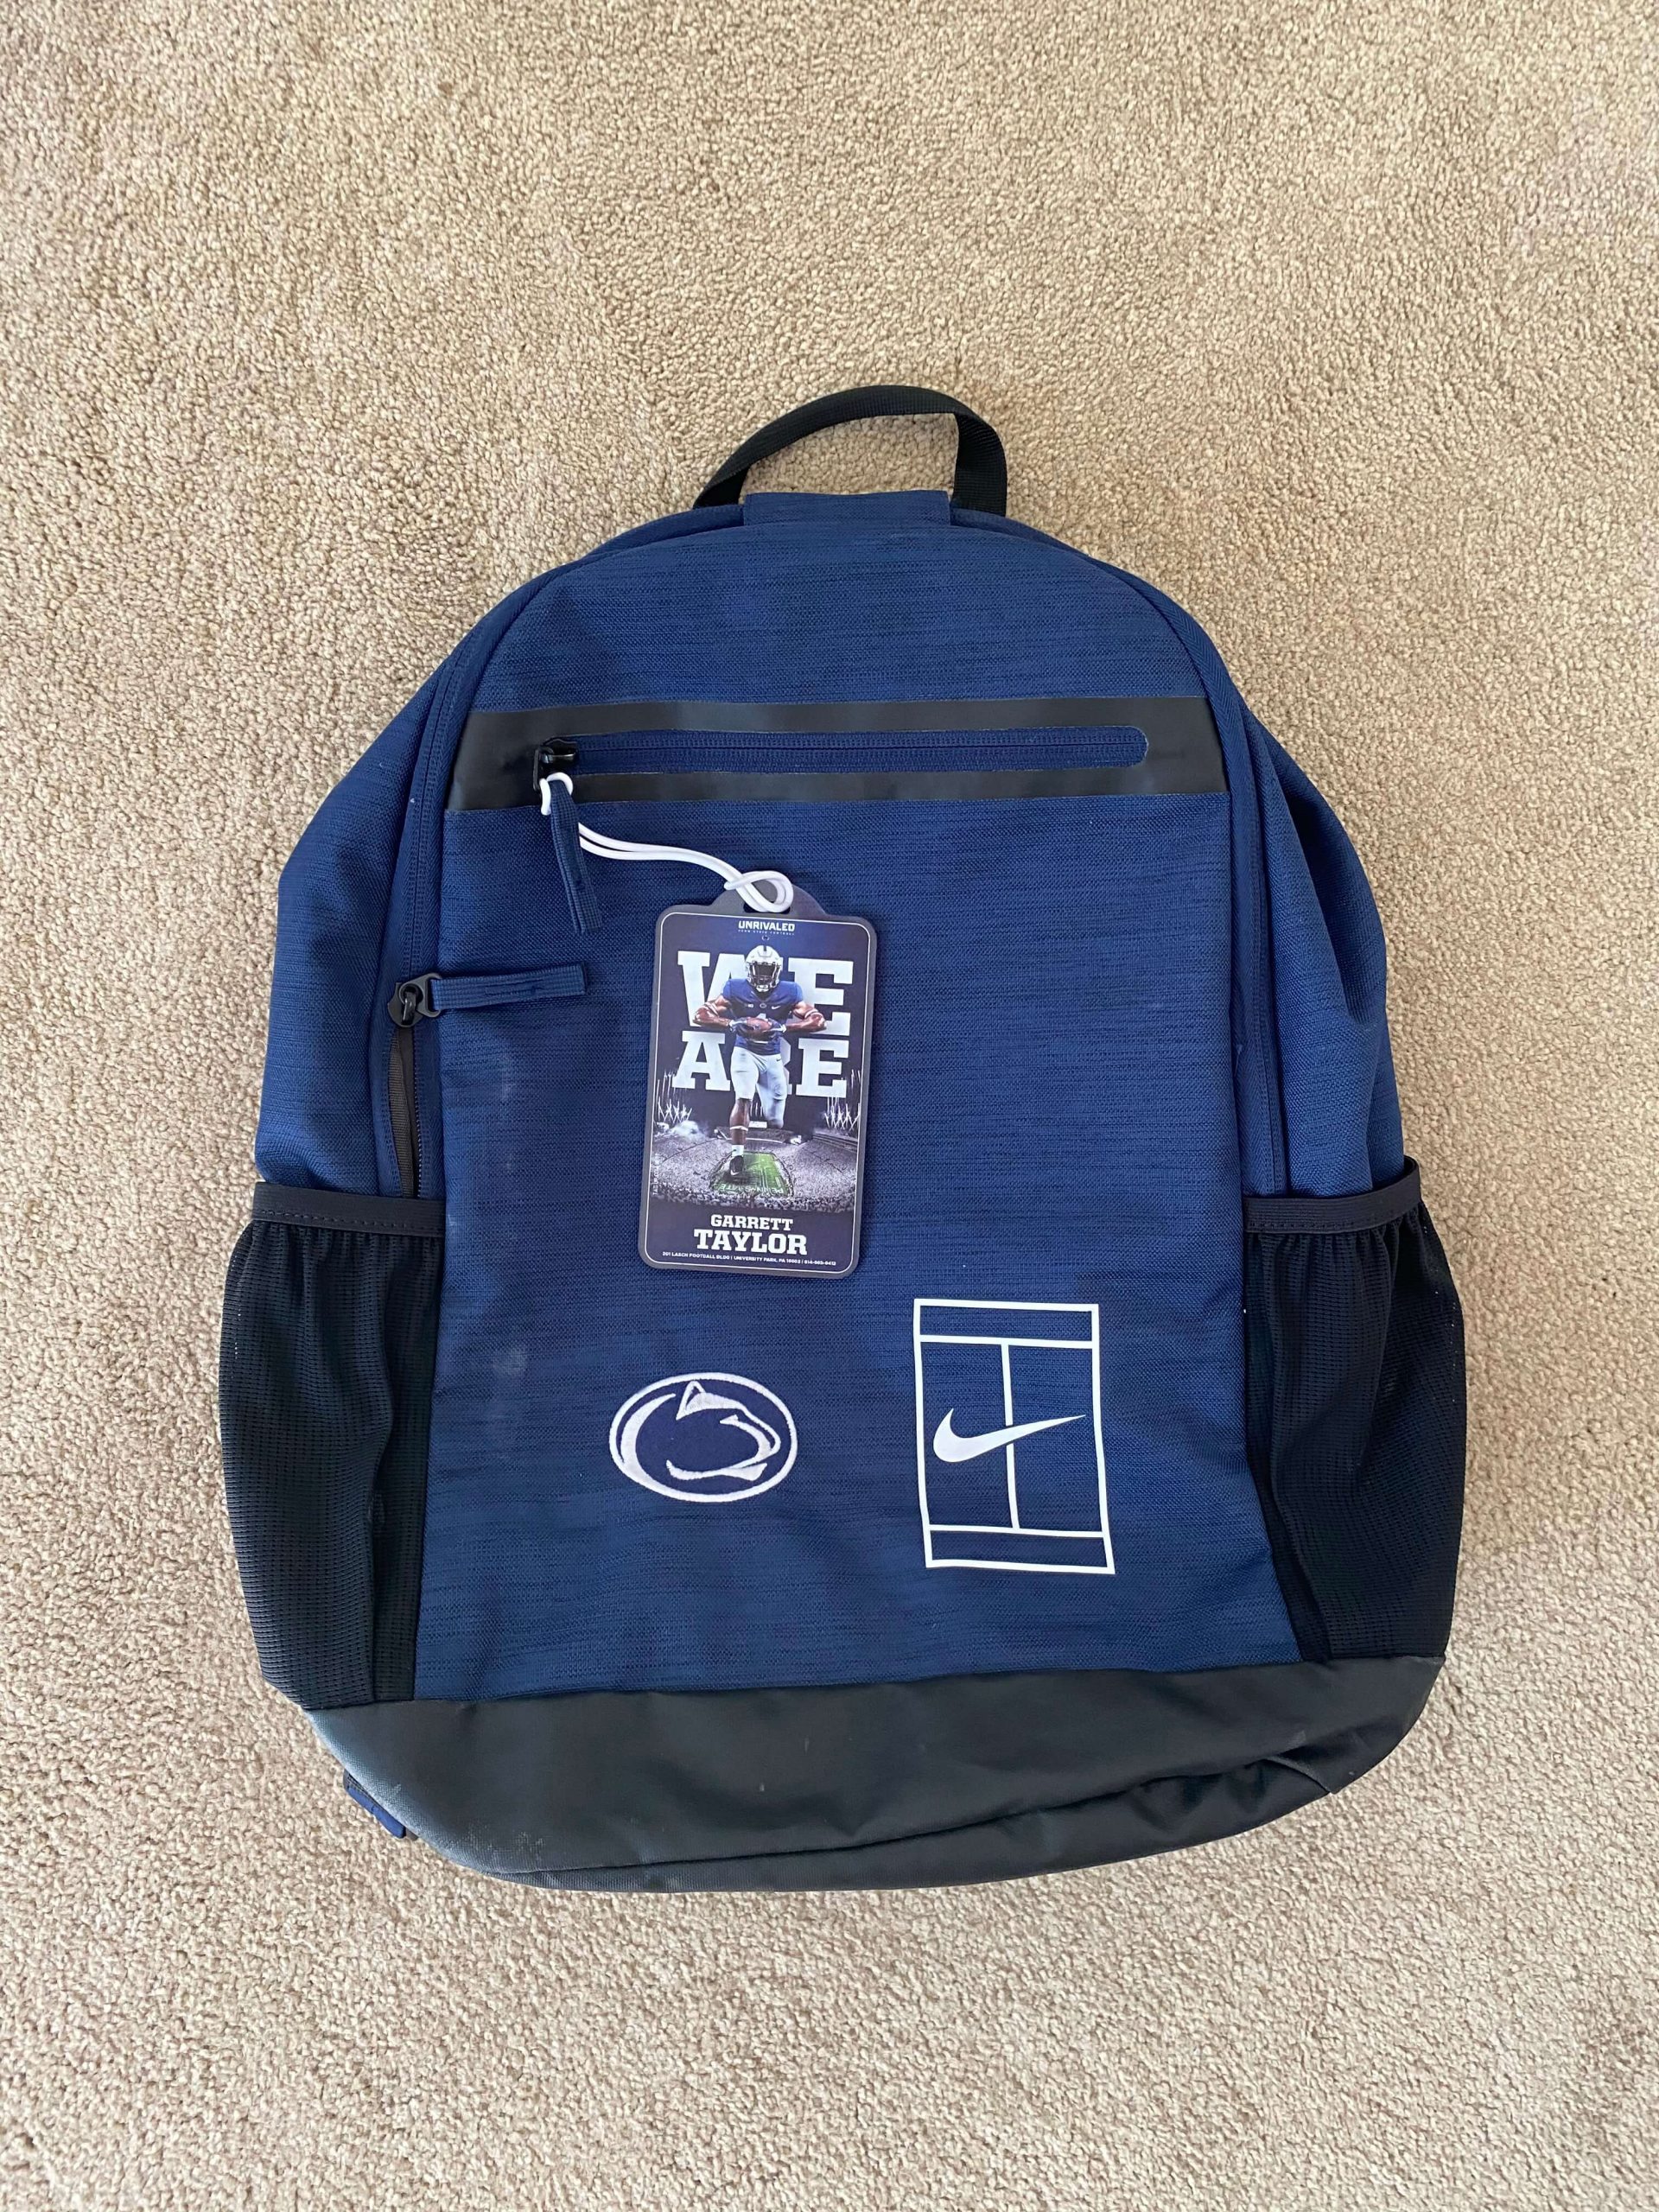 Penn State University Bags, Penn State Nittany Lions Backpacks